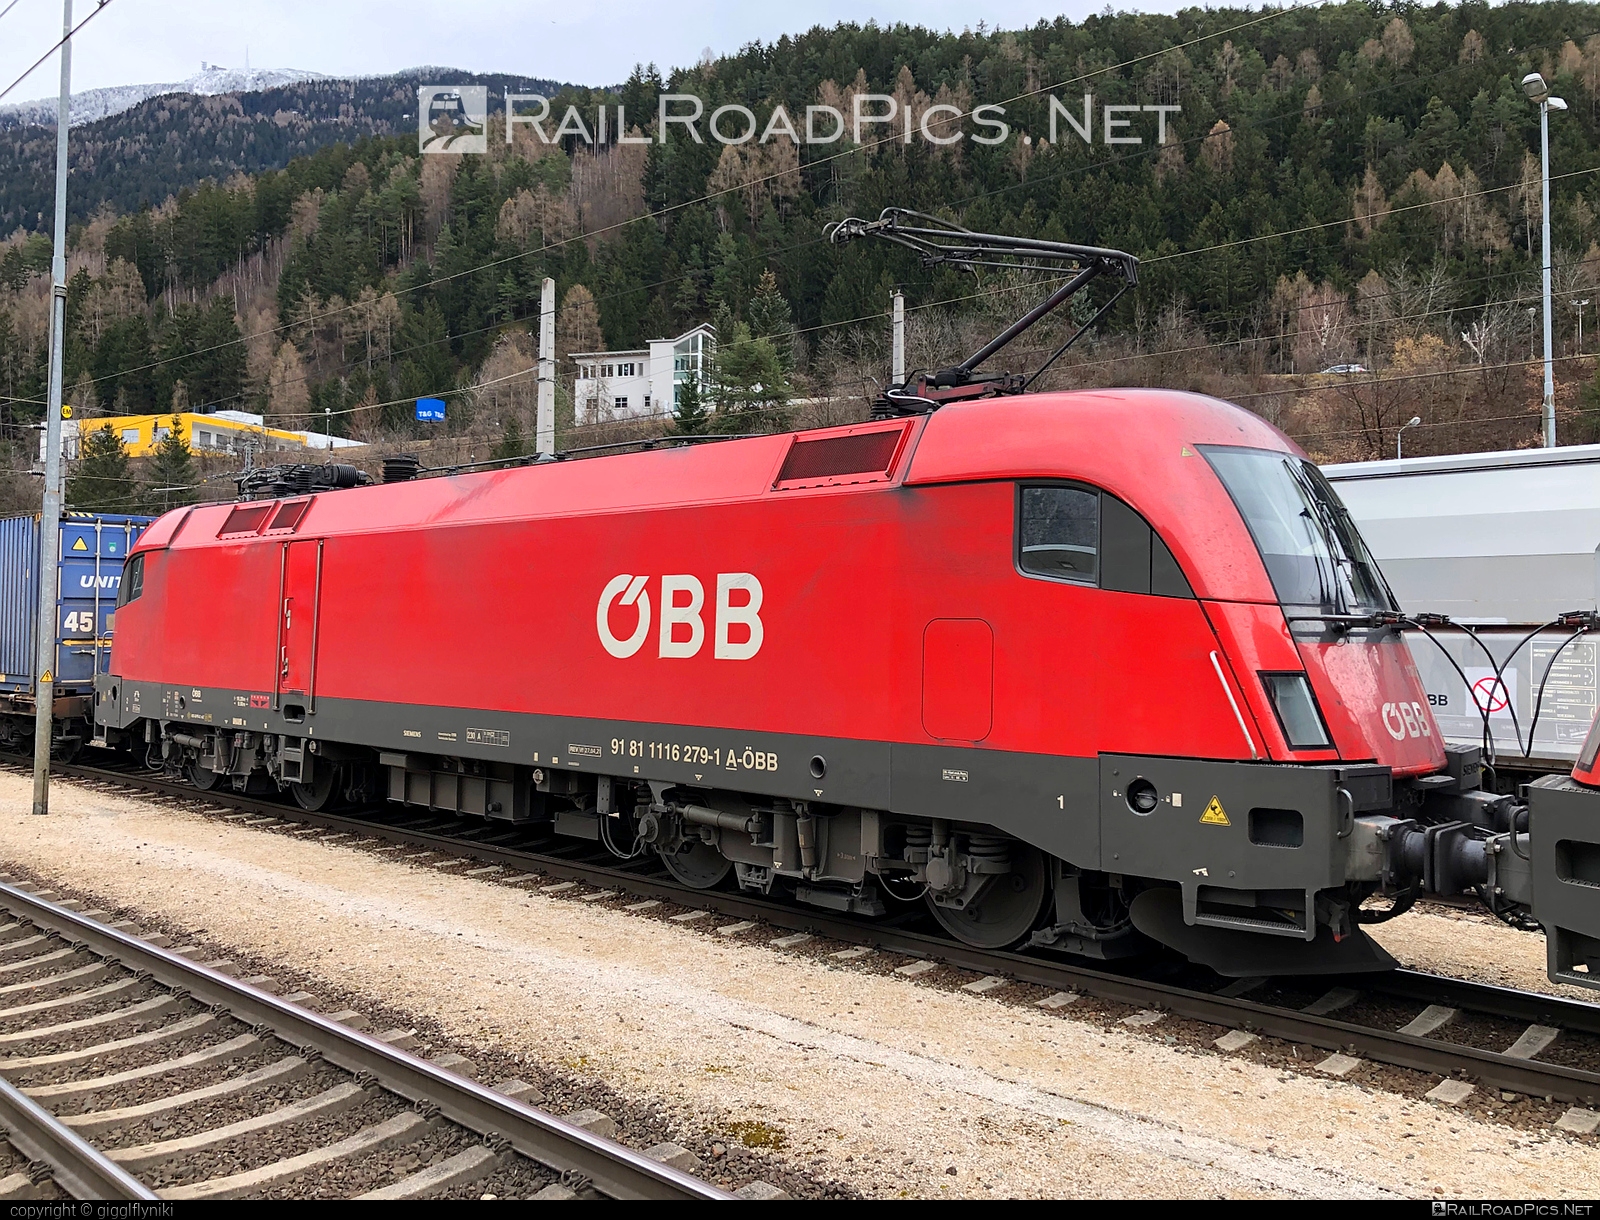 Siemens ES 64 U2 - 1116 279 operated by Rail Cargo Austria AG #es64 #es64u2 #eurosprinter #obb #osterreichischebundesbahnen #rcw #siemens #siemensEs64 #siemensEs64u2 #siemenstaurus #taurus #tauruslocomotive